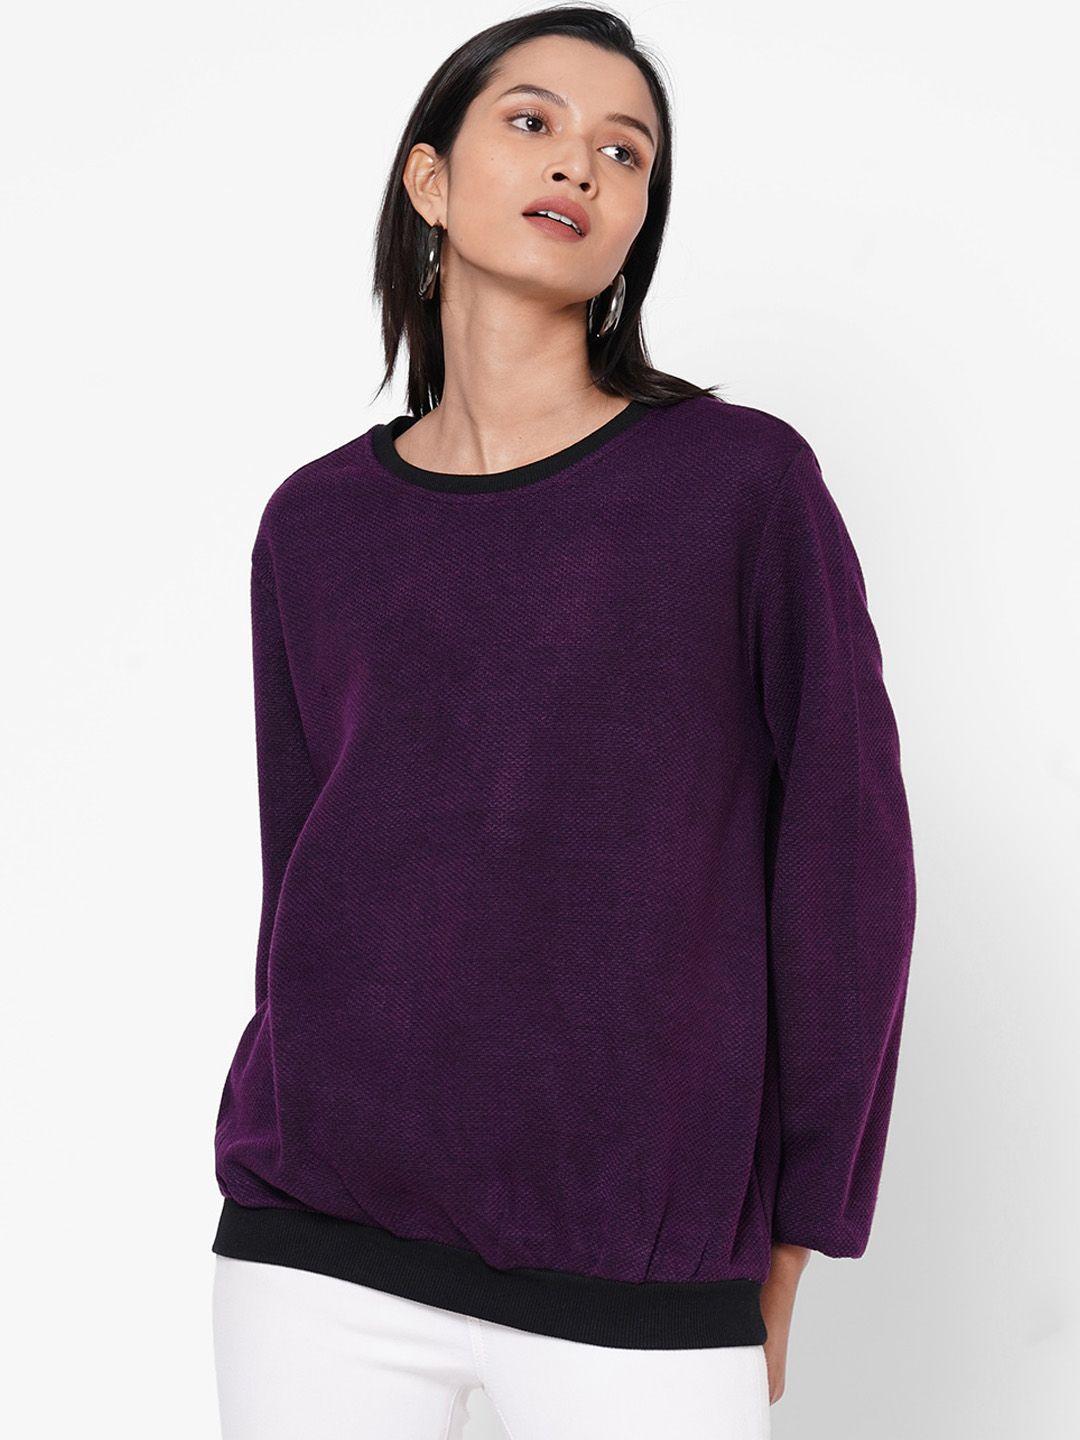 109f women purple solid top